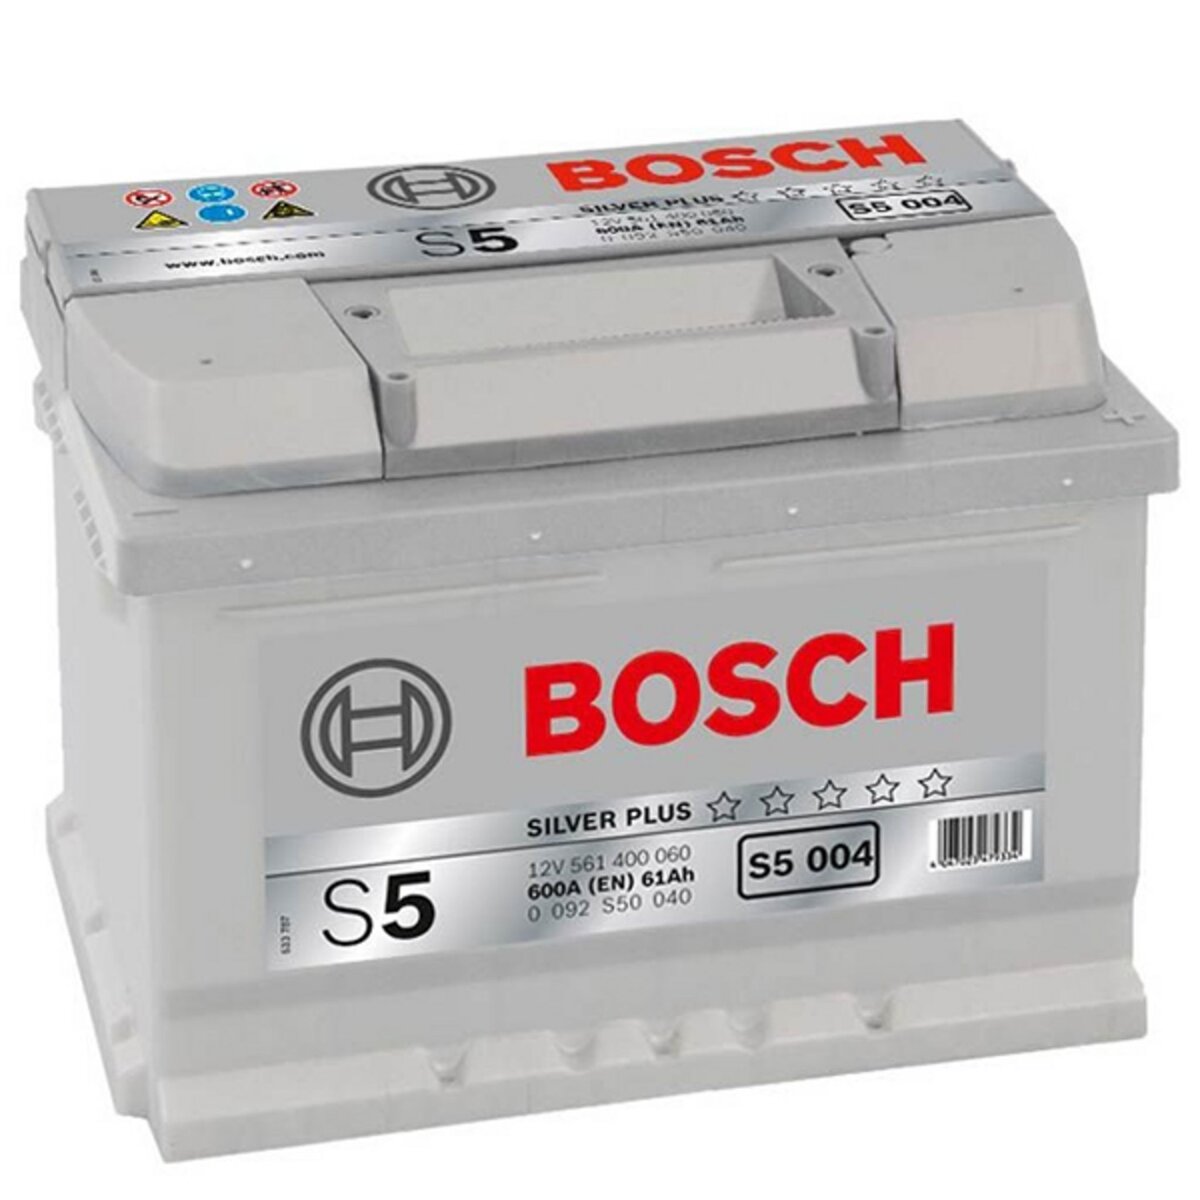 BOSCH Batterie Bosch S5004 61Ah 600A BOSCH